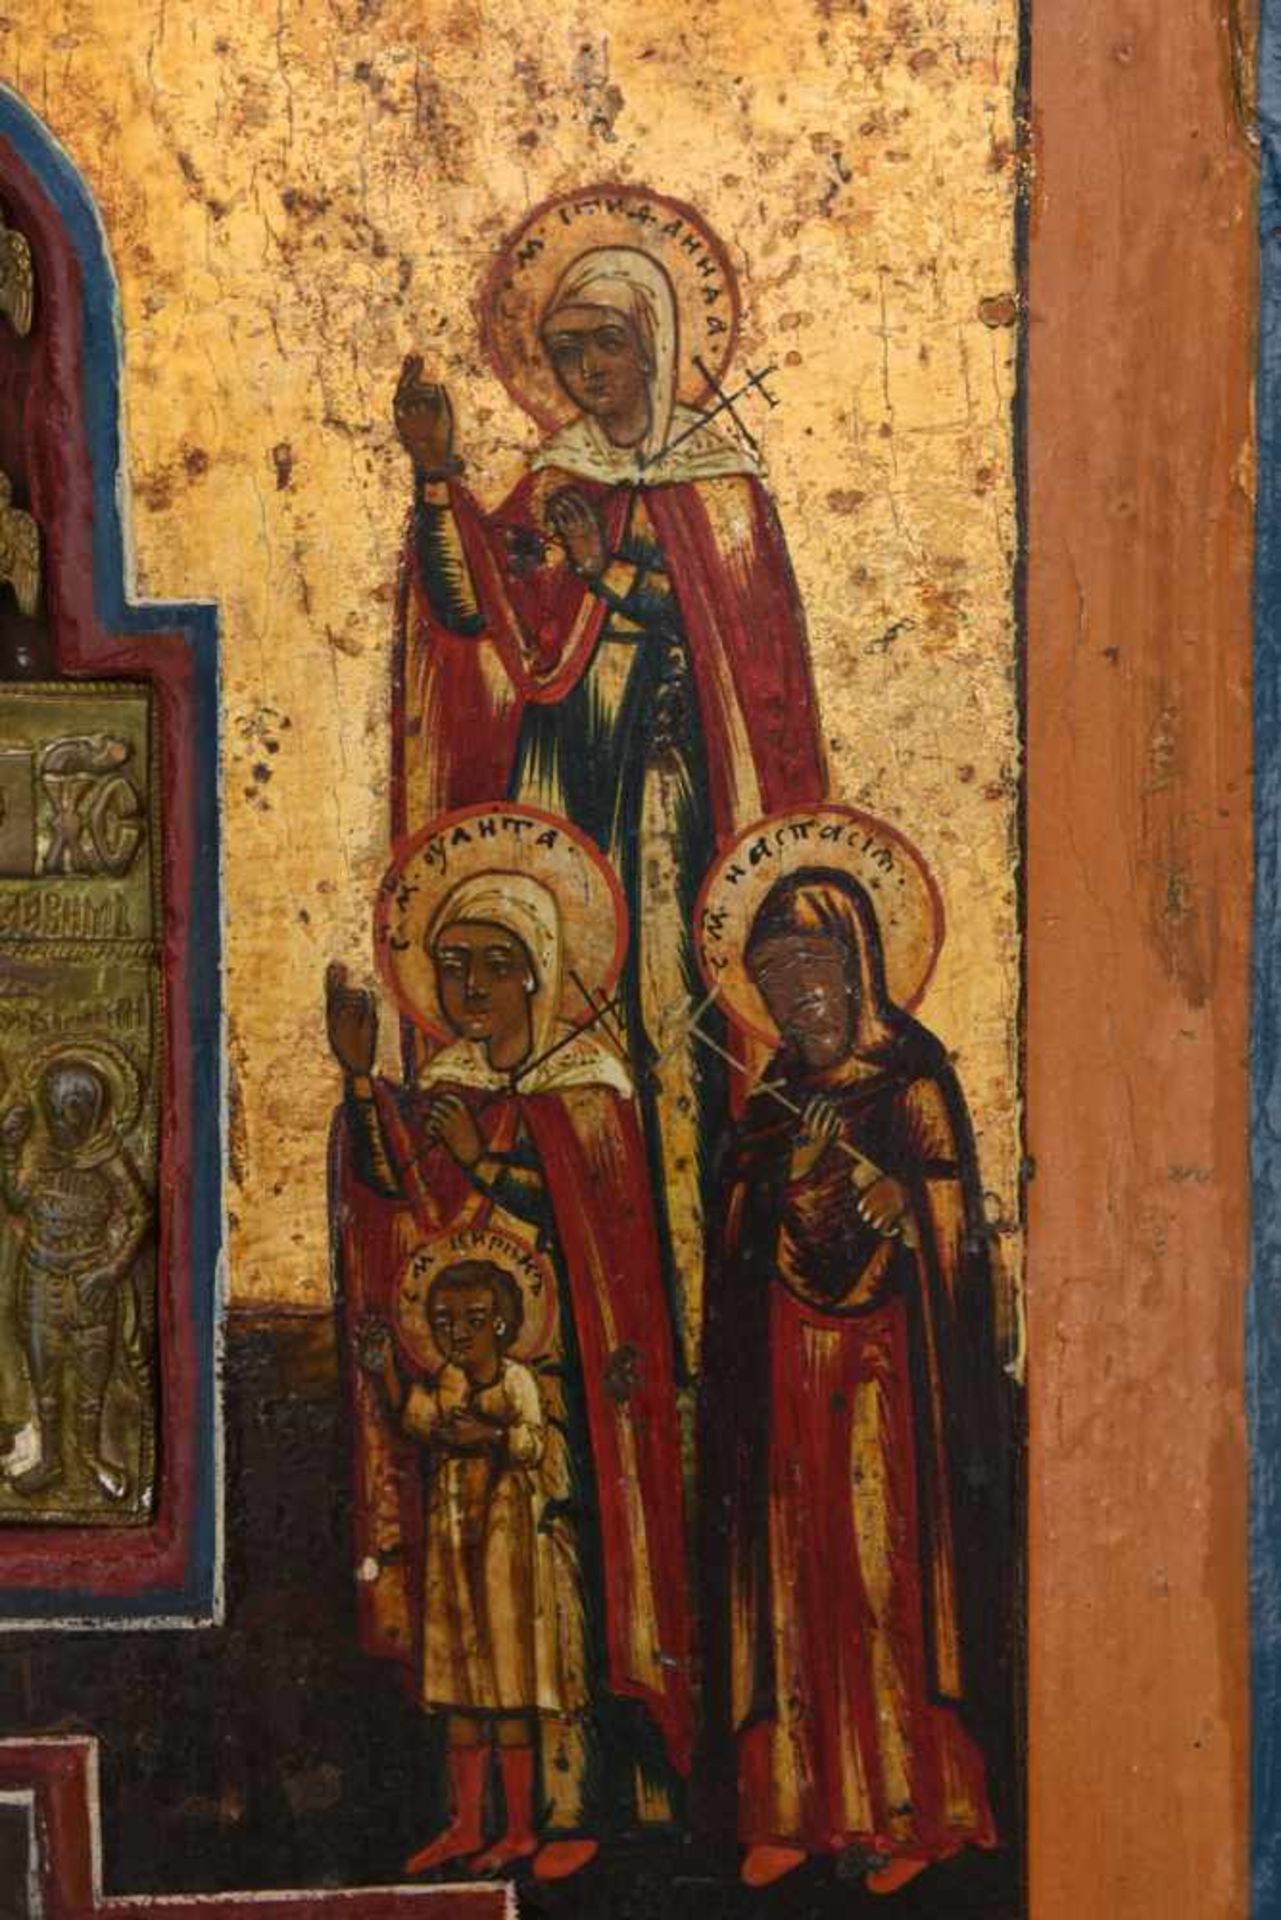 IKONE, Russisch- orthodox, wohl 18. Jh. Eingearbeitetes Kruzifix mit predellaartigem Unterbau. - Bild 4 aus 6